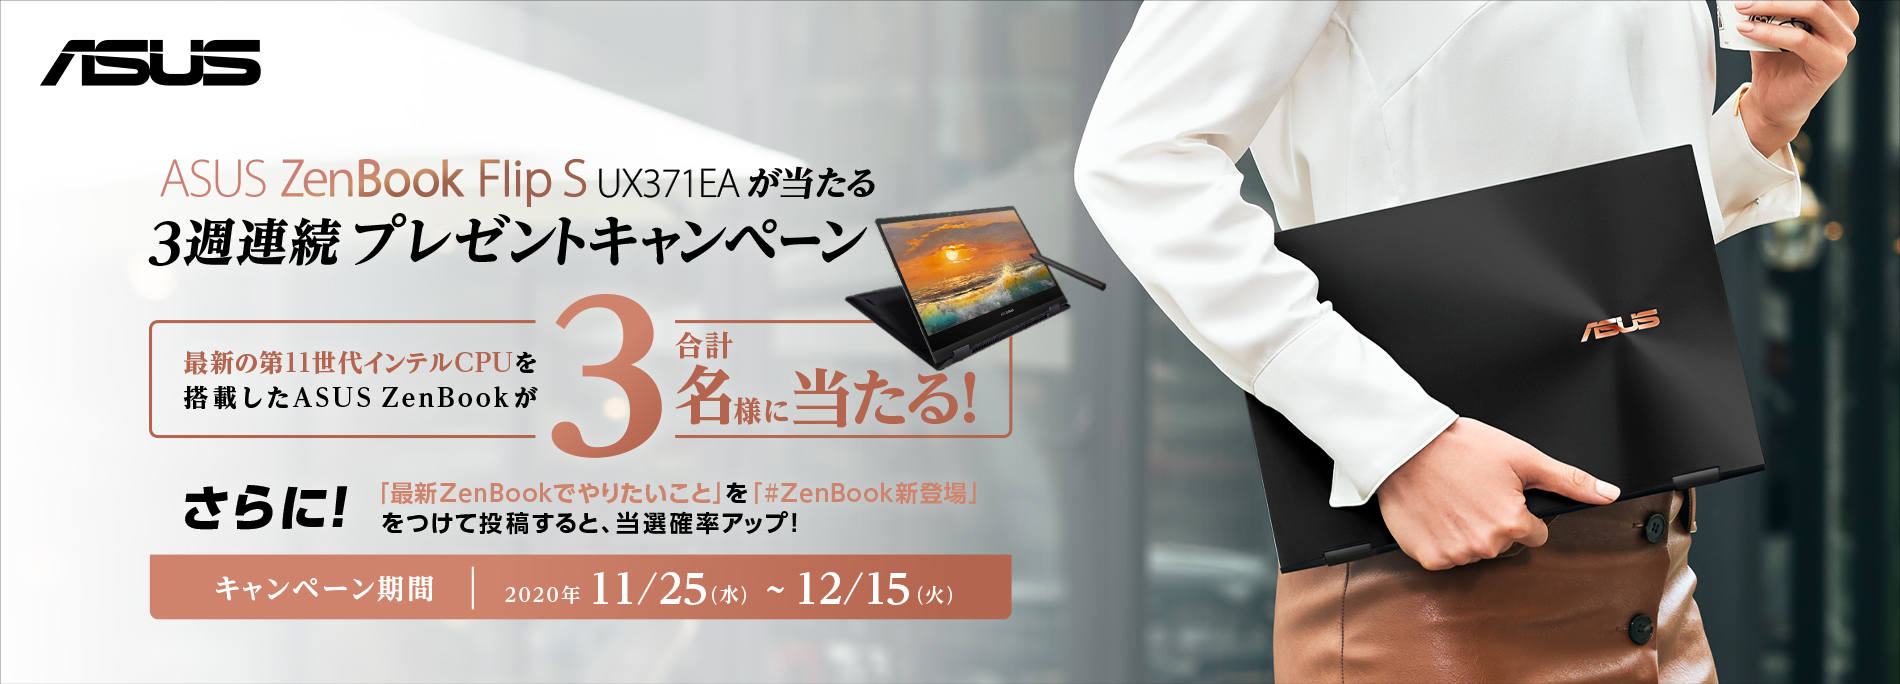 ASUS ZenBook Flip S UX371EAが当たる 3週連続プレゼントキャンペーン